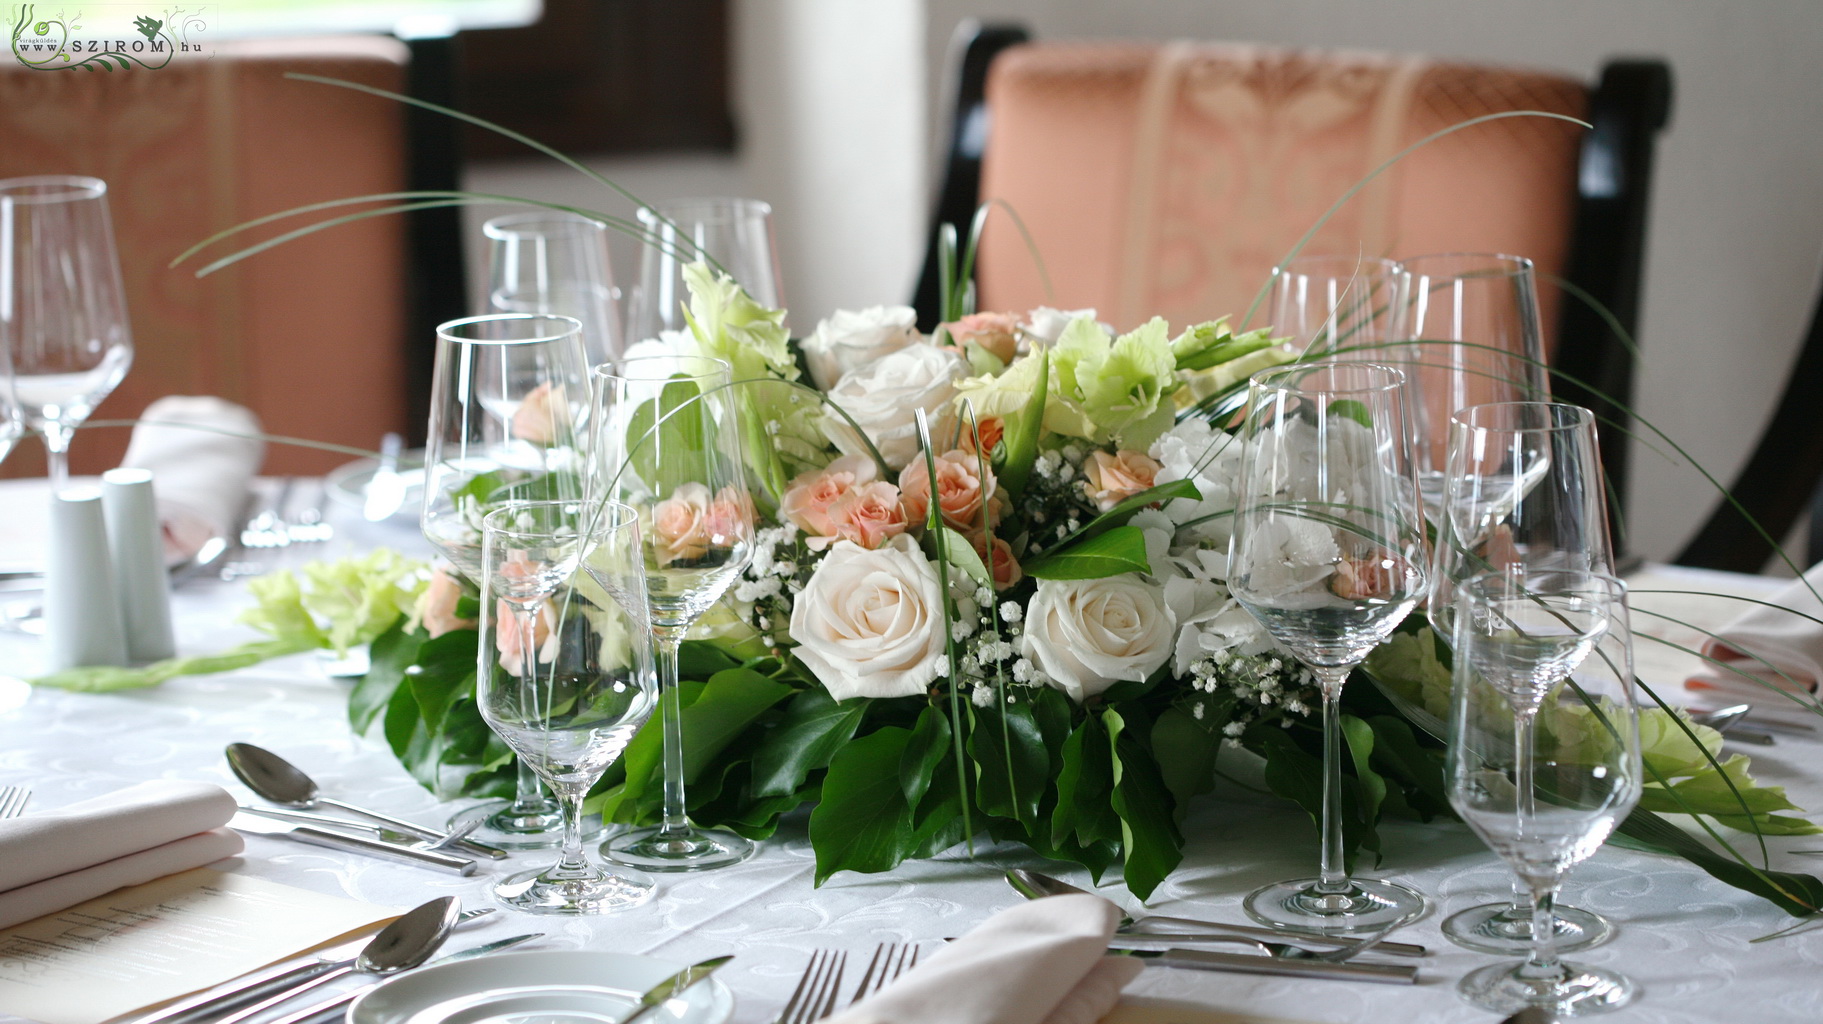 Virágküldés Budapest - Esküvői hosszú asztaldísz, Halászbástya Étterem Budapest (hortenzia, rózsa, bokros rózsa, kardvirág, rezgő, fehér, zöld, barack ) 